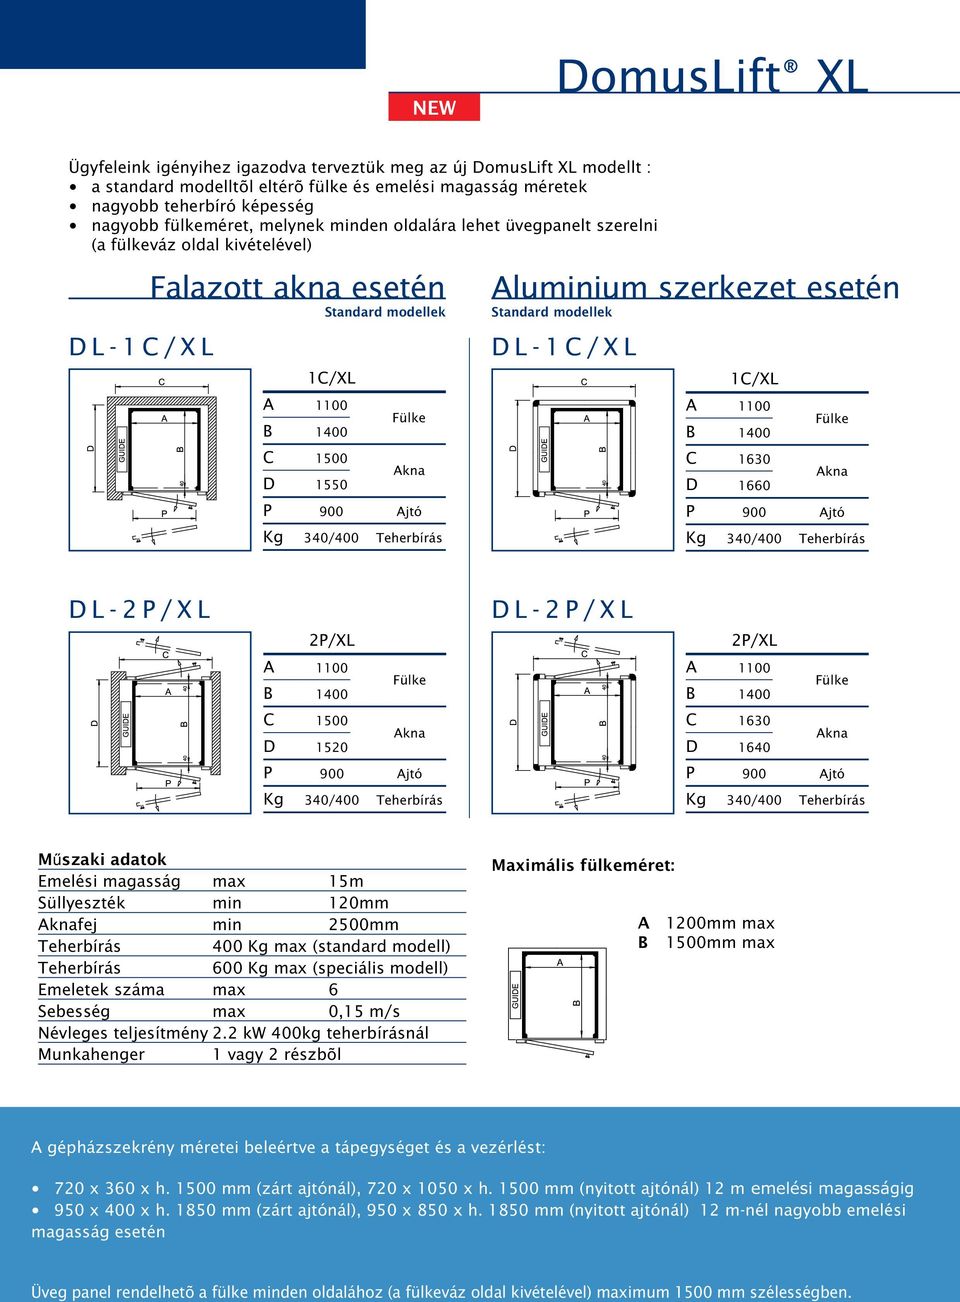 Teherbírás Aluminium szerkezet esetén Standard modellek D L - 1 C / X L 1C/XL A 1100 B 1400 C 1630 D 1660 P 900 Ajtó Kg 340/400 Teherbírás D L - 2 P / X L D L - 2 P / X L 2P/XL 2P/XL A 1100 B 1400 A